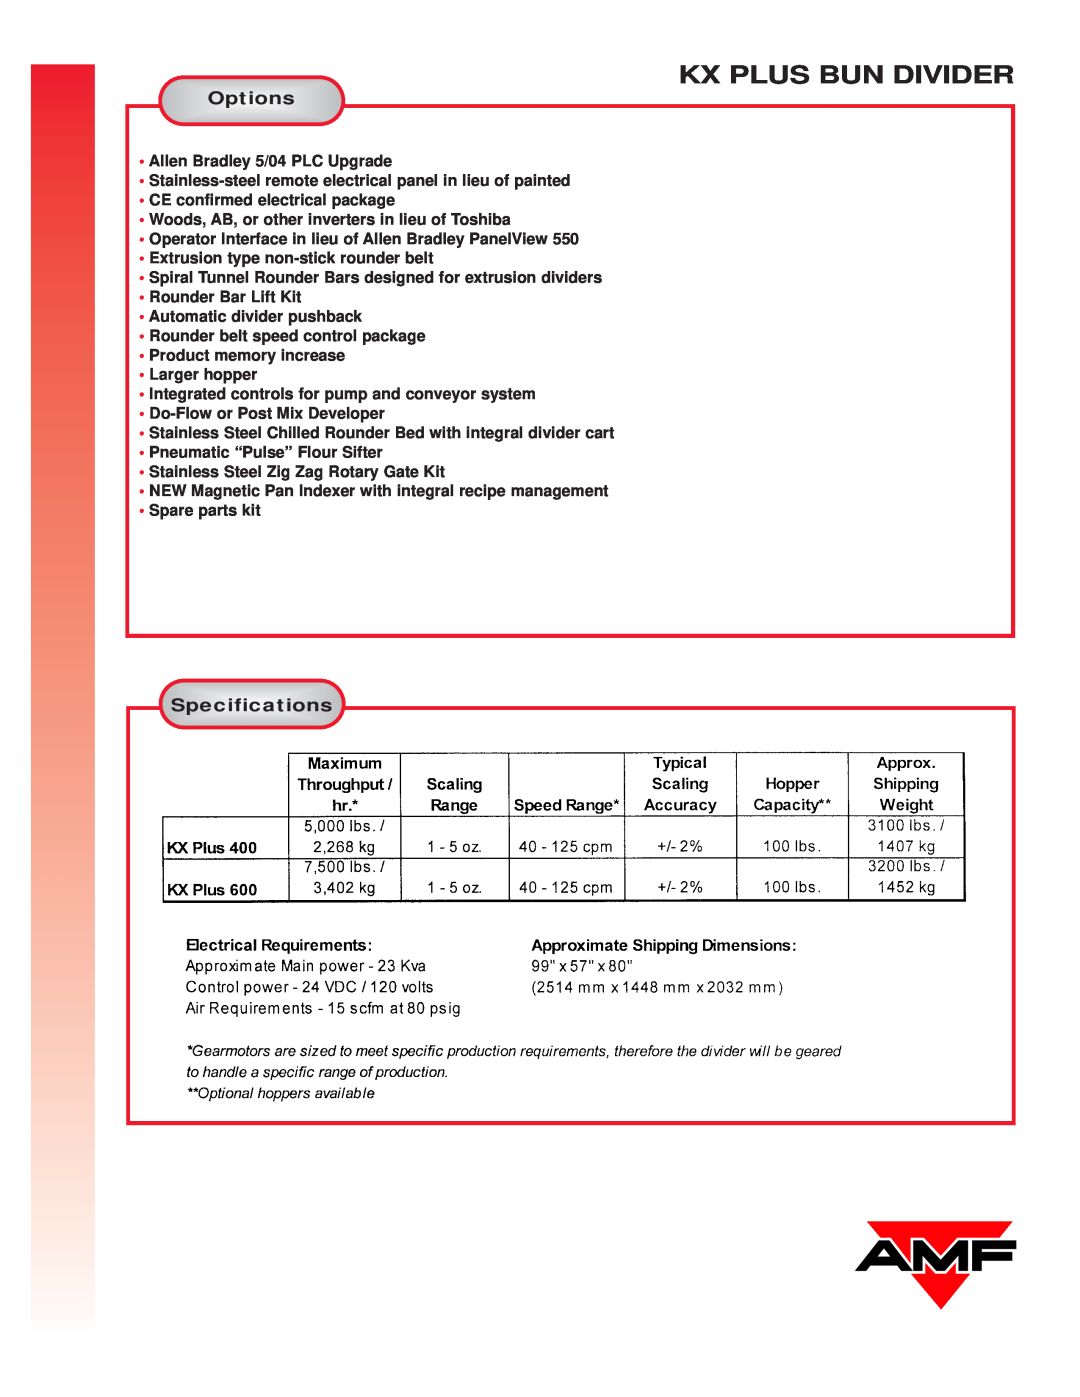 AMF KX PLUS manual Options, Specifications, Kx Plus Bun Divider 